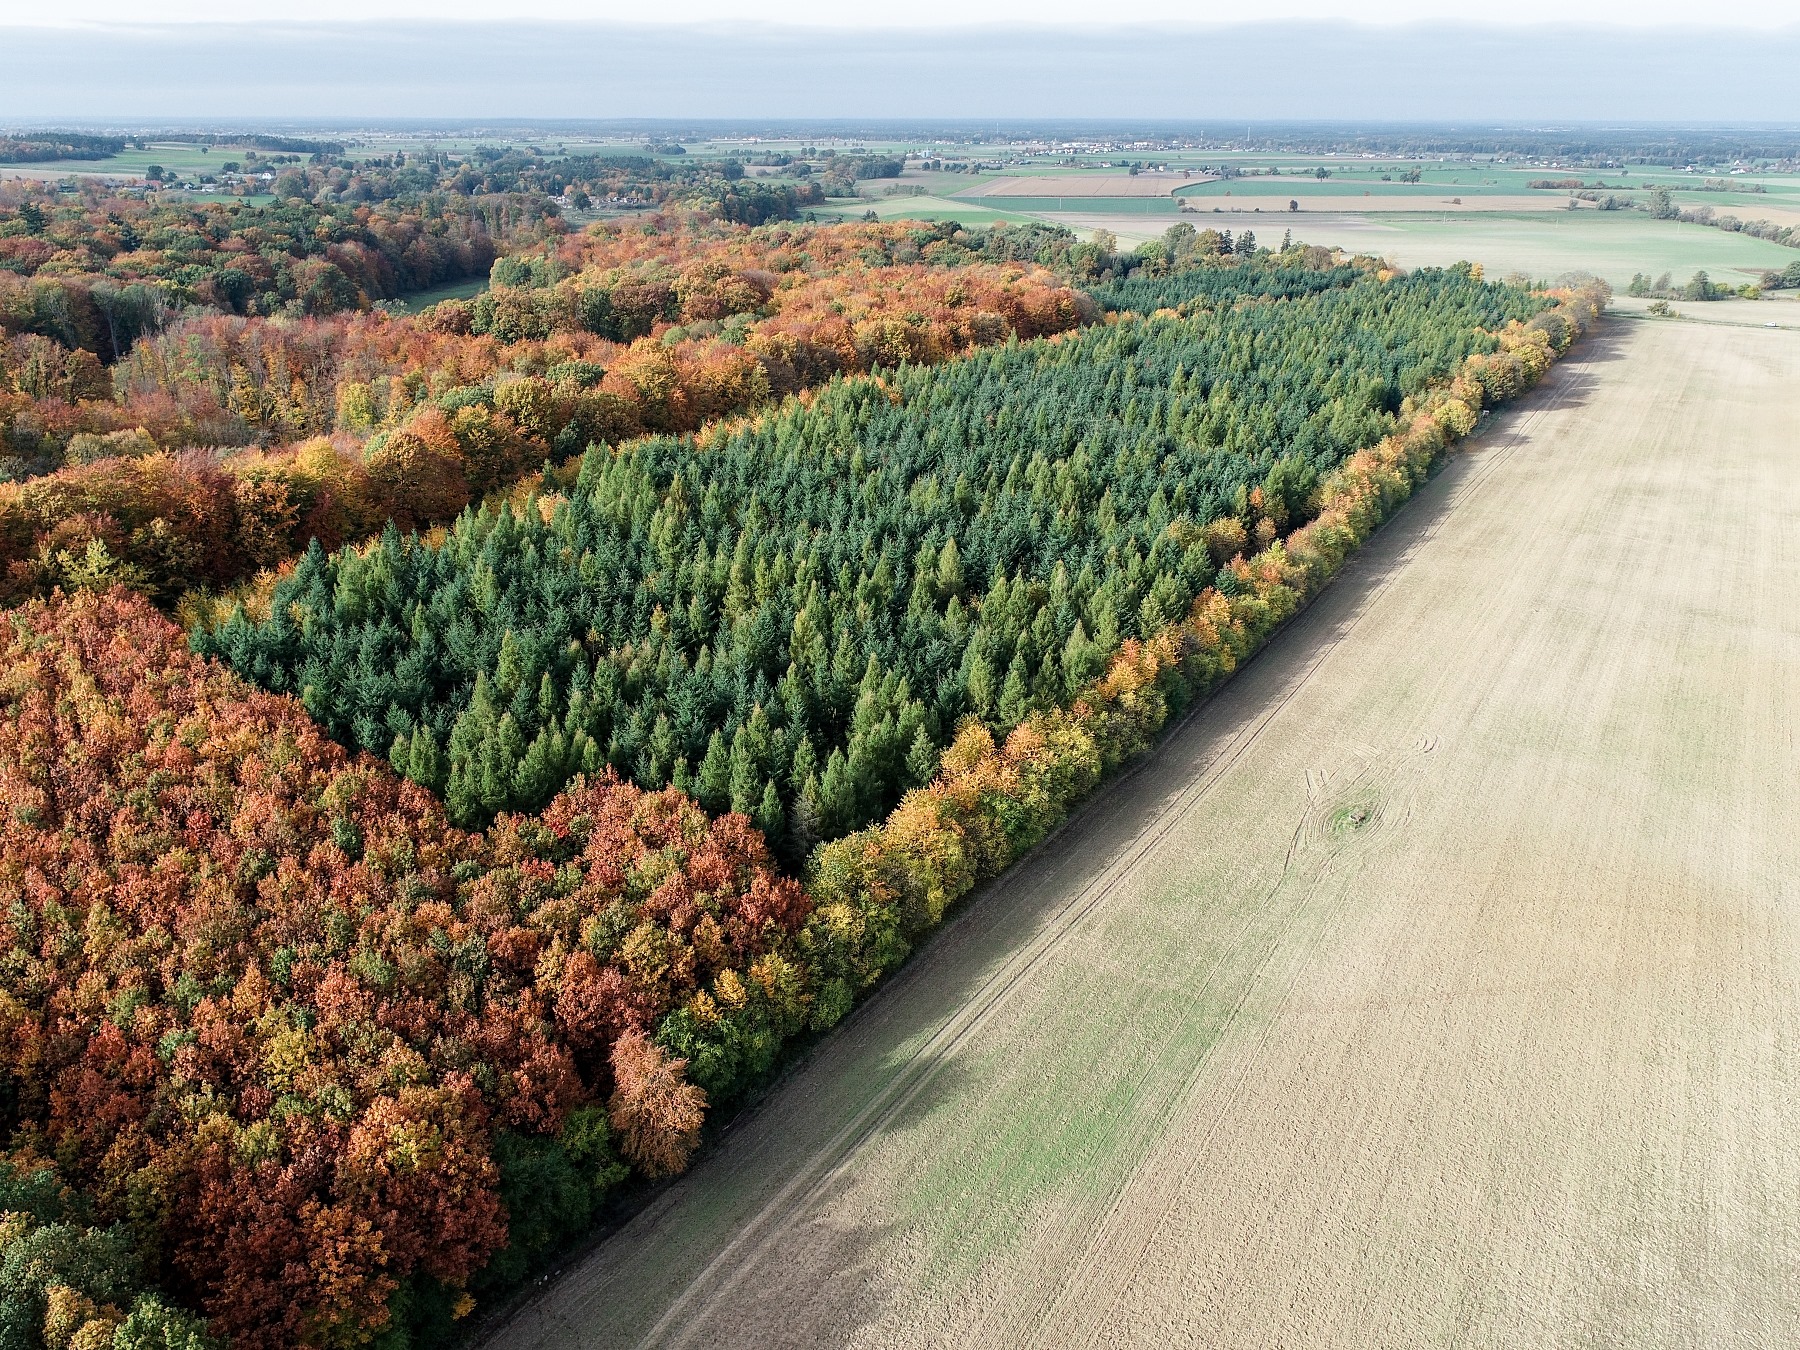 Zdjęcie lasu wykonane za pomocą drona. Fot. Artur Napierała